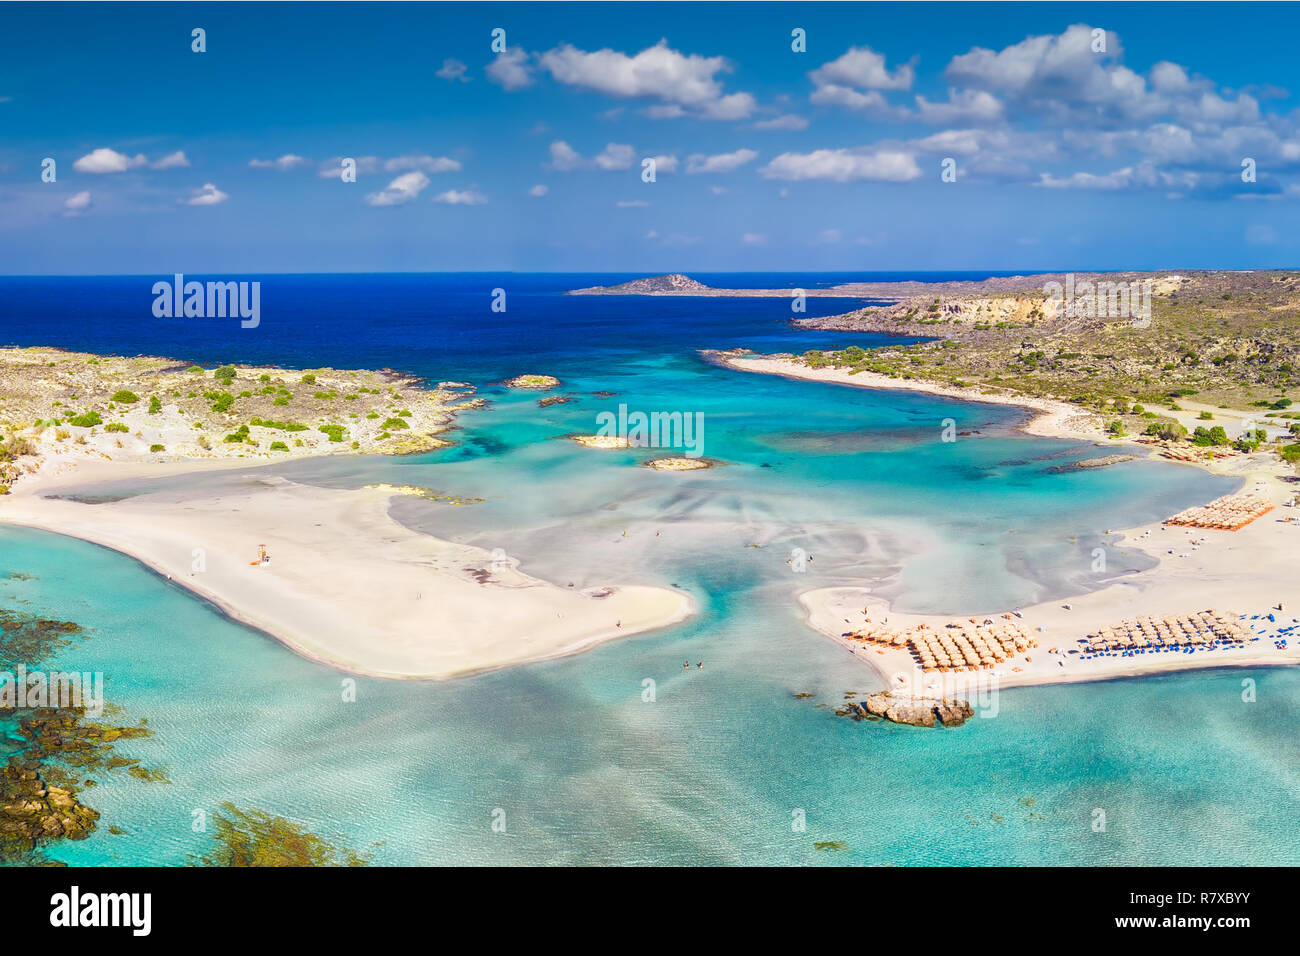 Vista aerea di Elafonissi beach sull'isola di Creta con azure acqua chiara, la Grecia, l'Europa. Creta è la più grande e la più popolata delle isole greche. Foto Stock